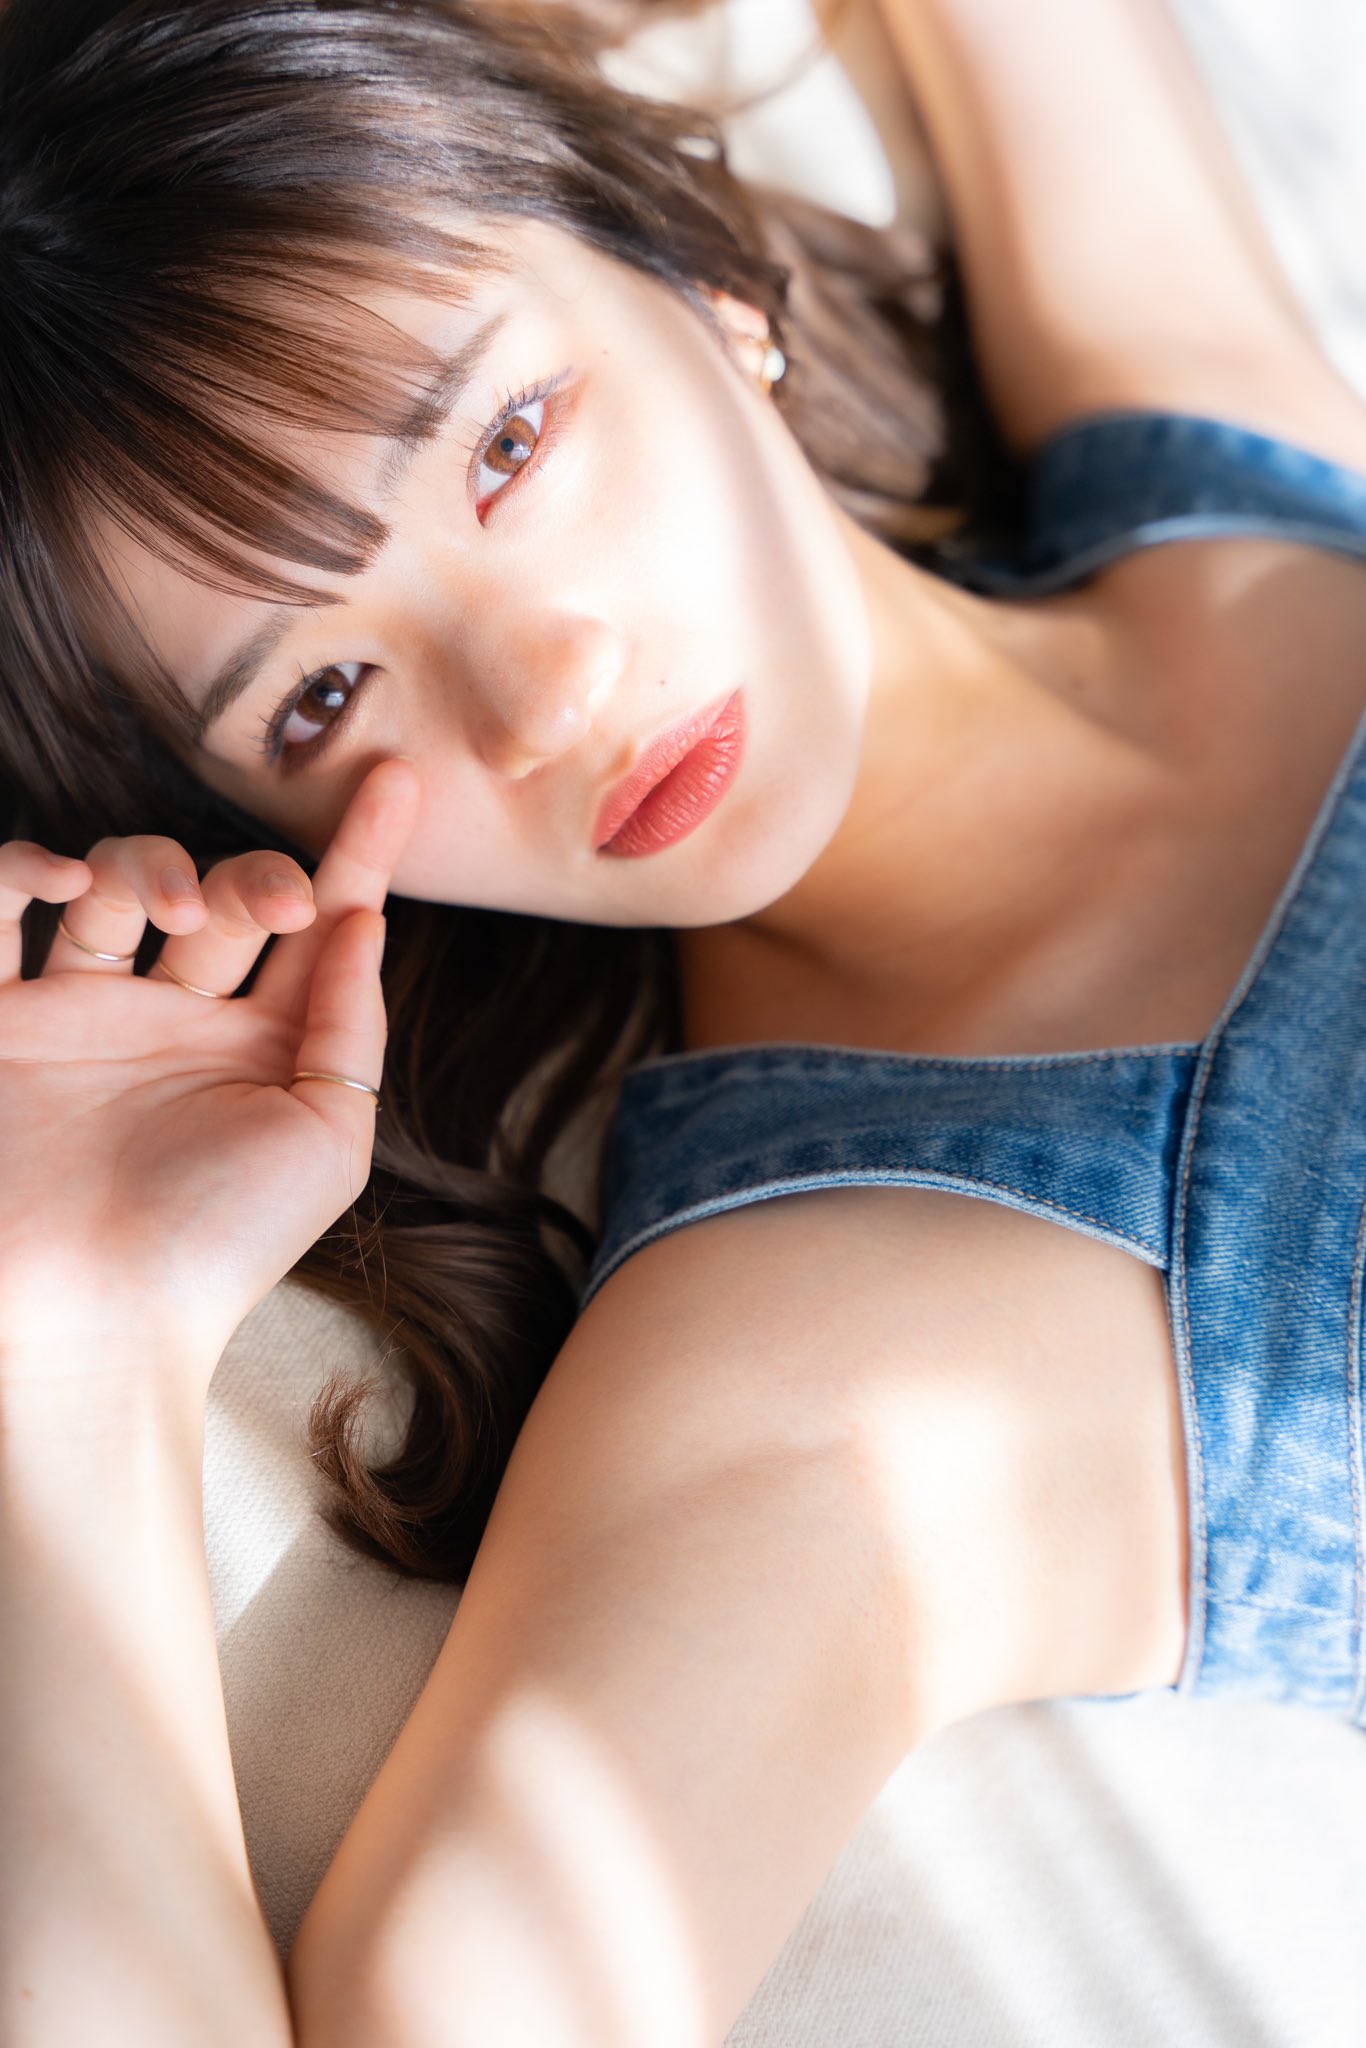 利之toshiyukiportrait Biwak On Twitter Model 雪乃のあさんnoayukinon Ssrps